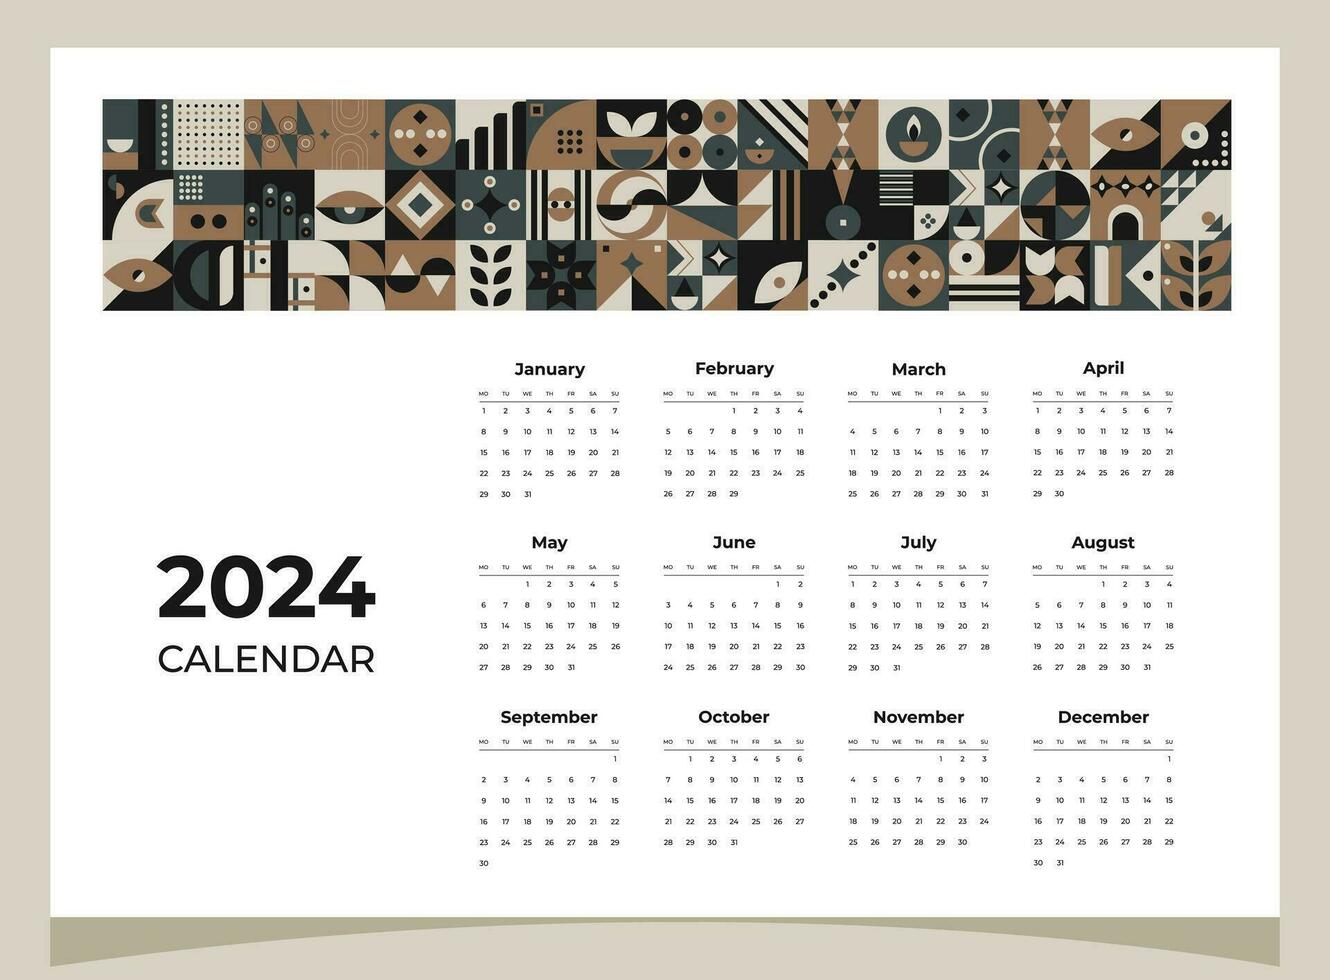 calendario 2024 geométrico patrones. calendario modelo para 2024 año con geométrico formas vector